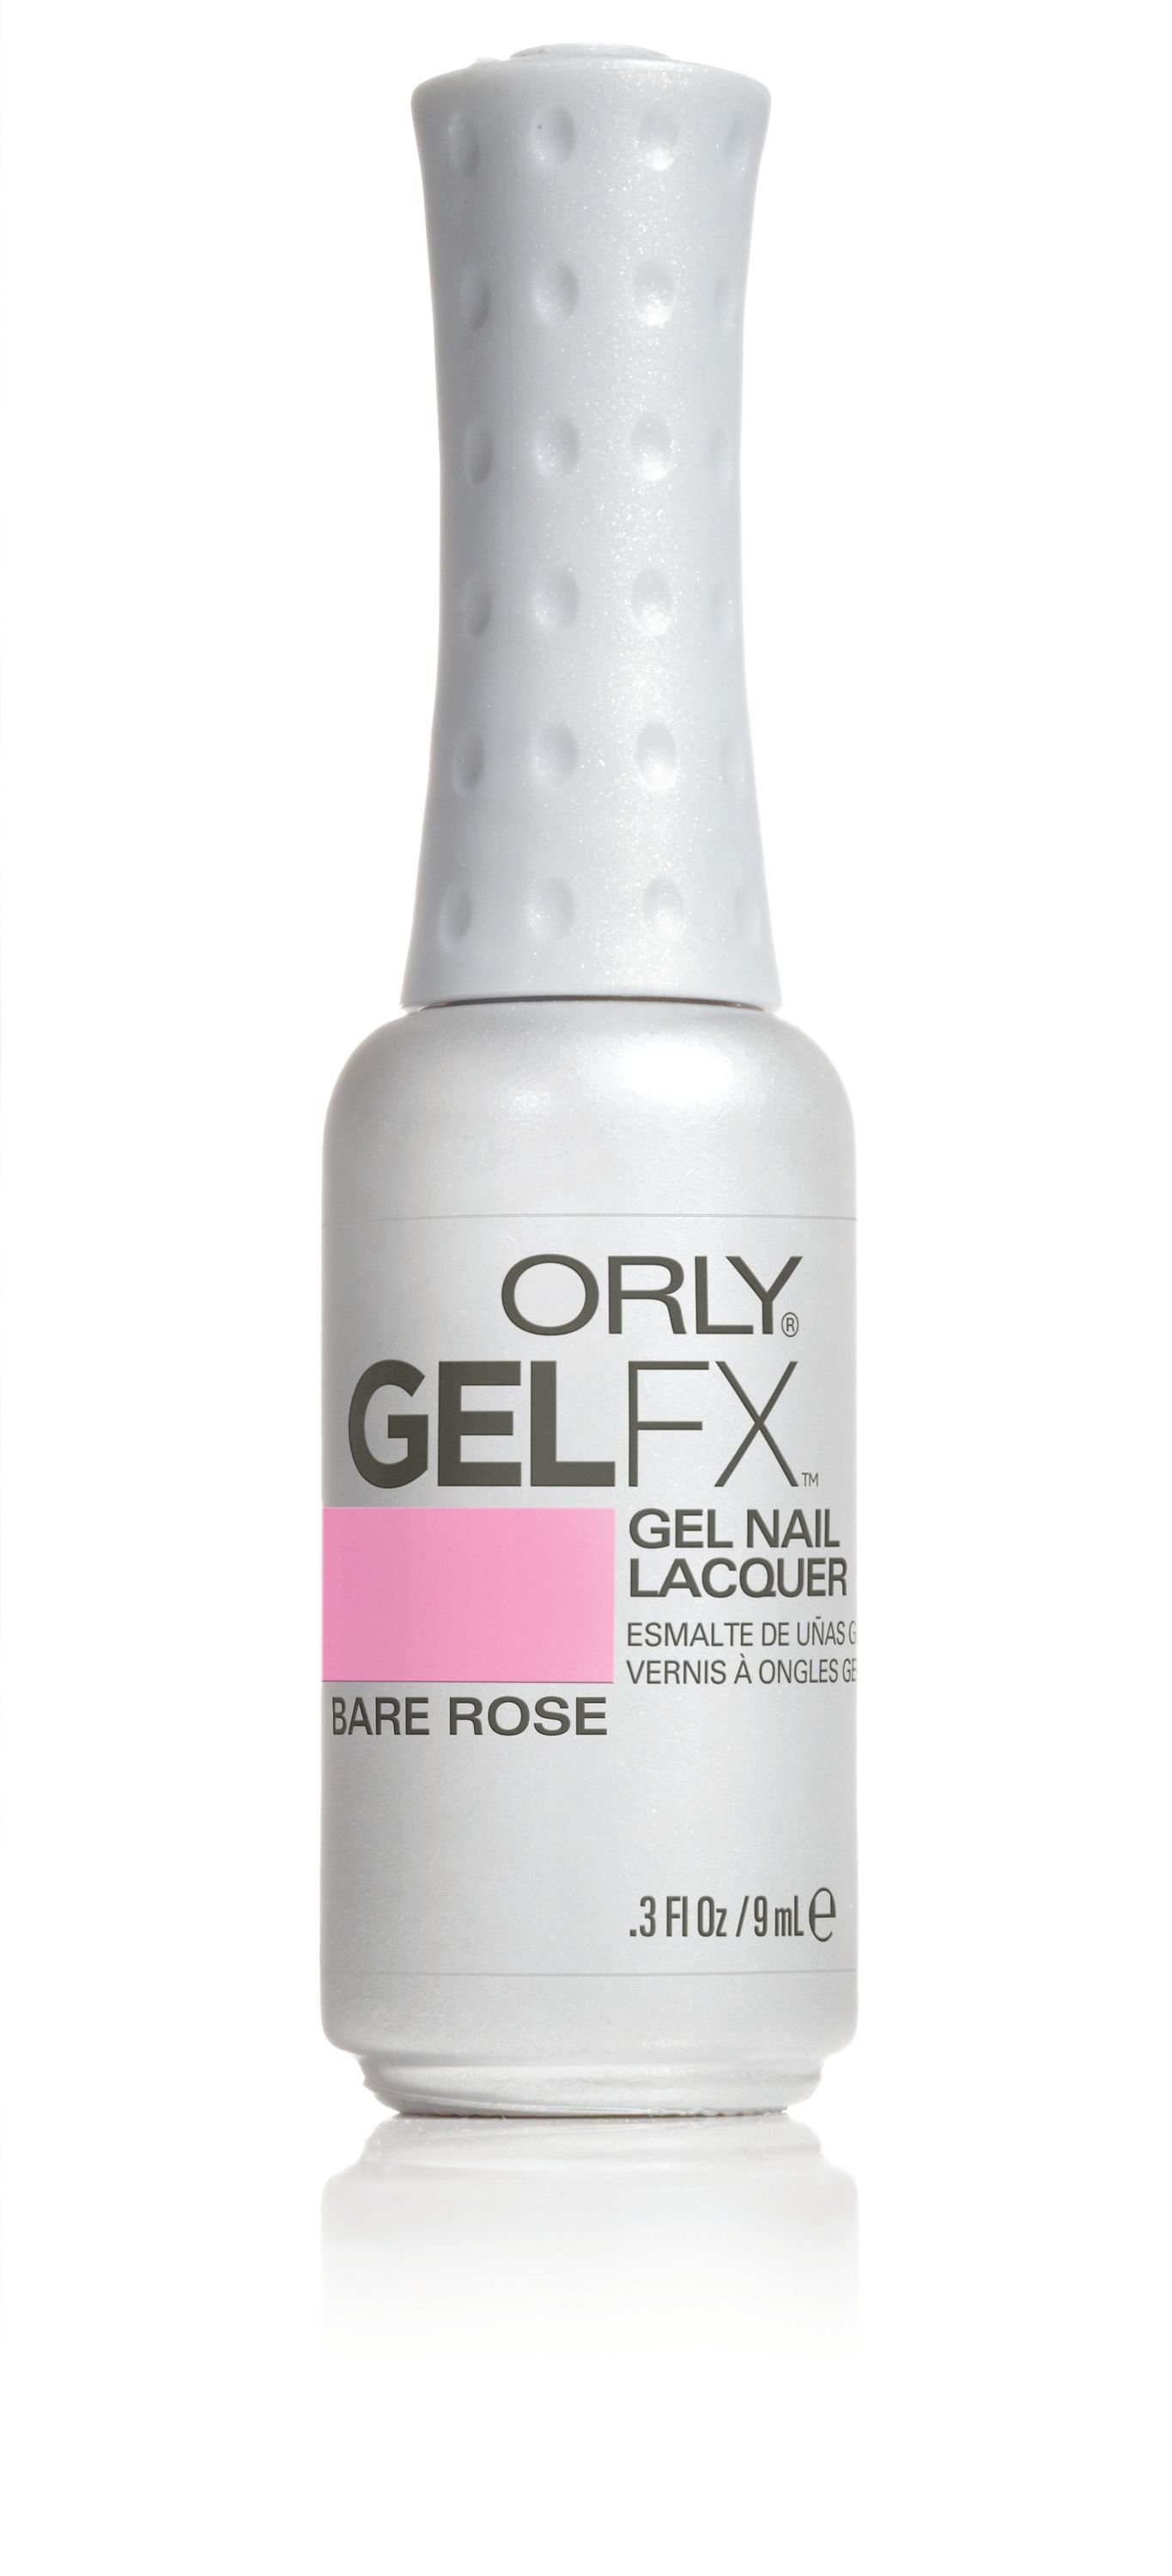 ORLY UV-Nagellack GEL FX Bare Rose, 9ML